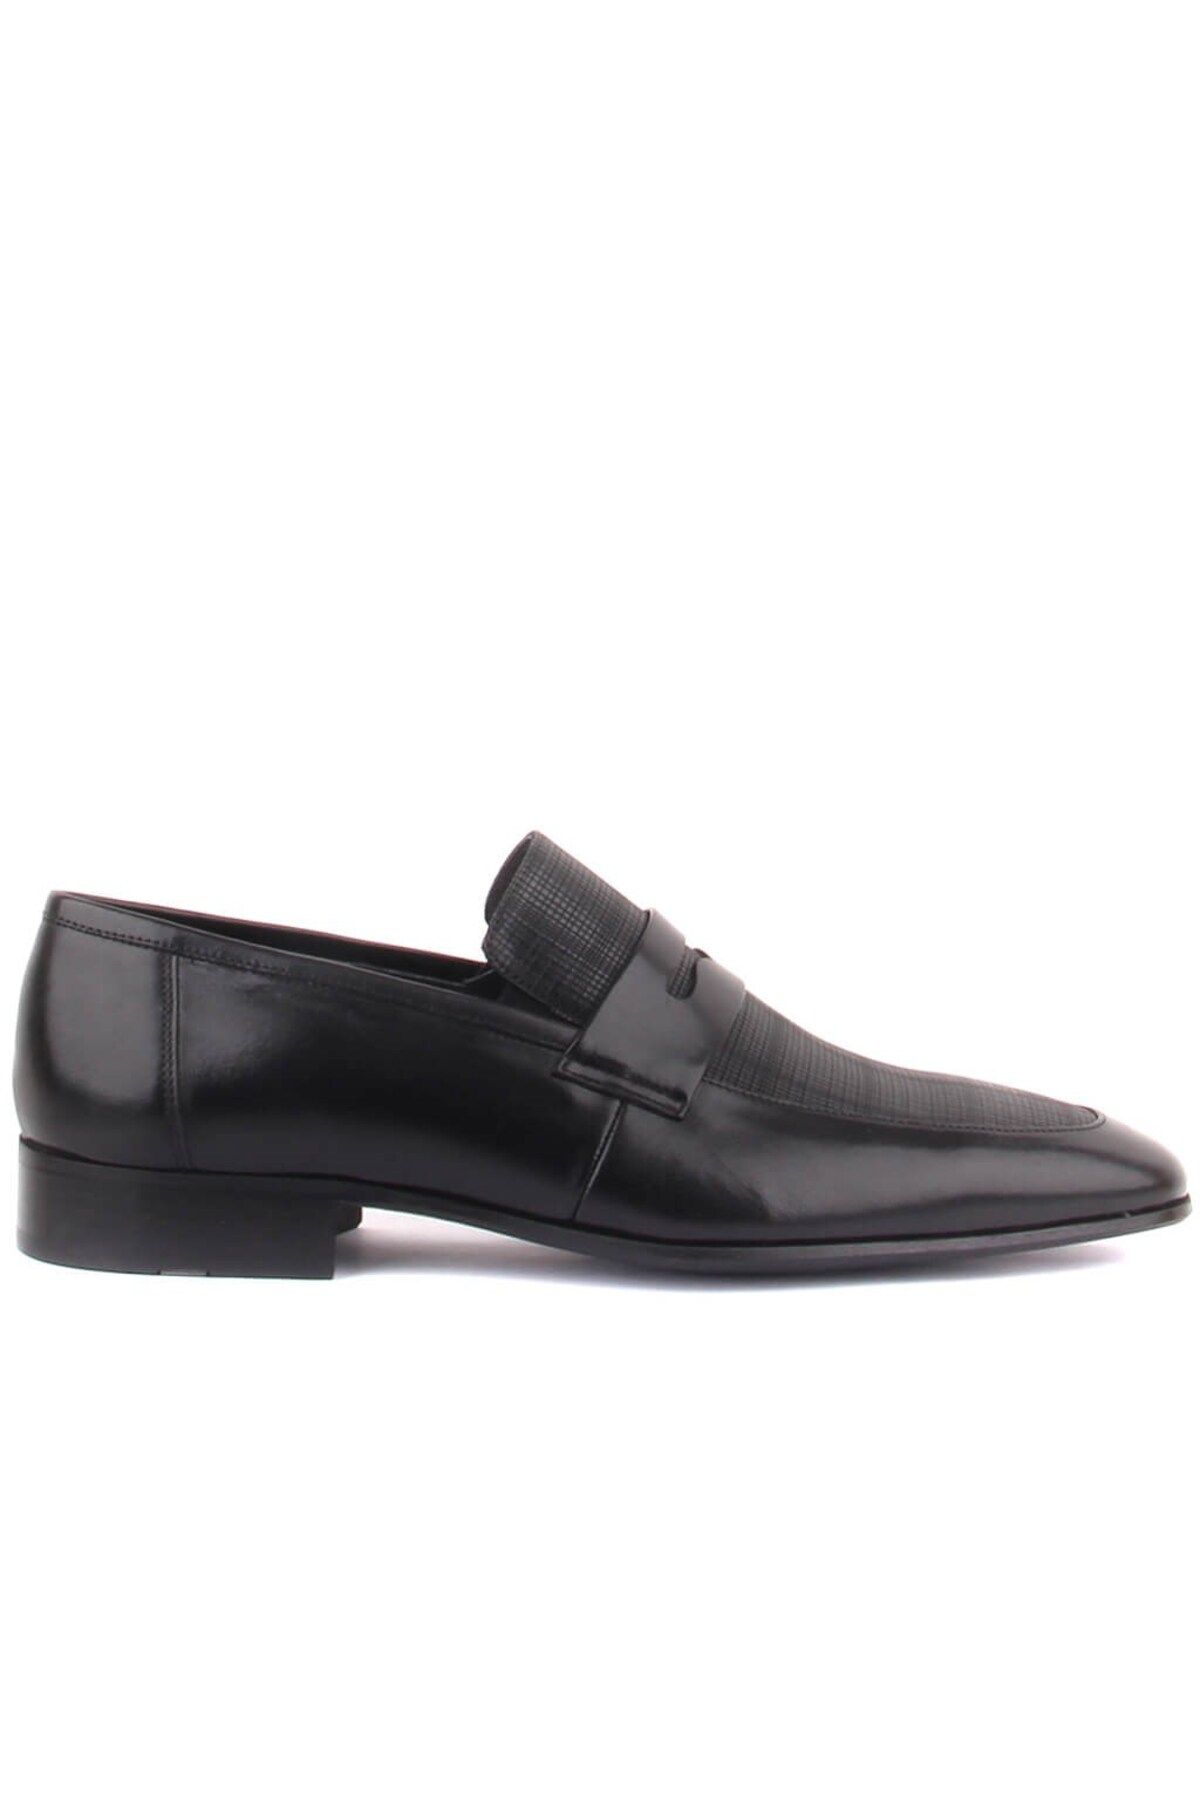 Sail Lakers Fosco - Siyah Deri Bağcıksız Erkek Klasik Ayakkabı